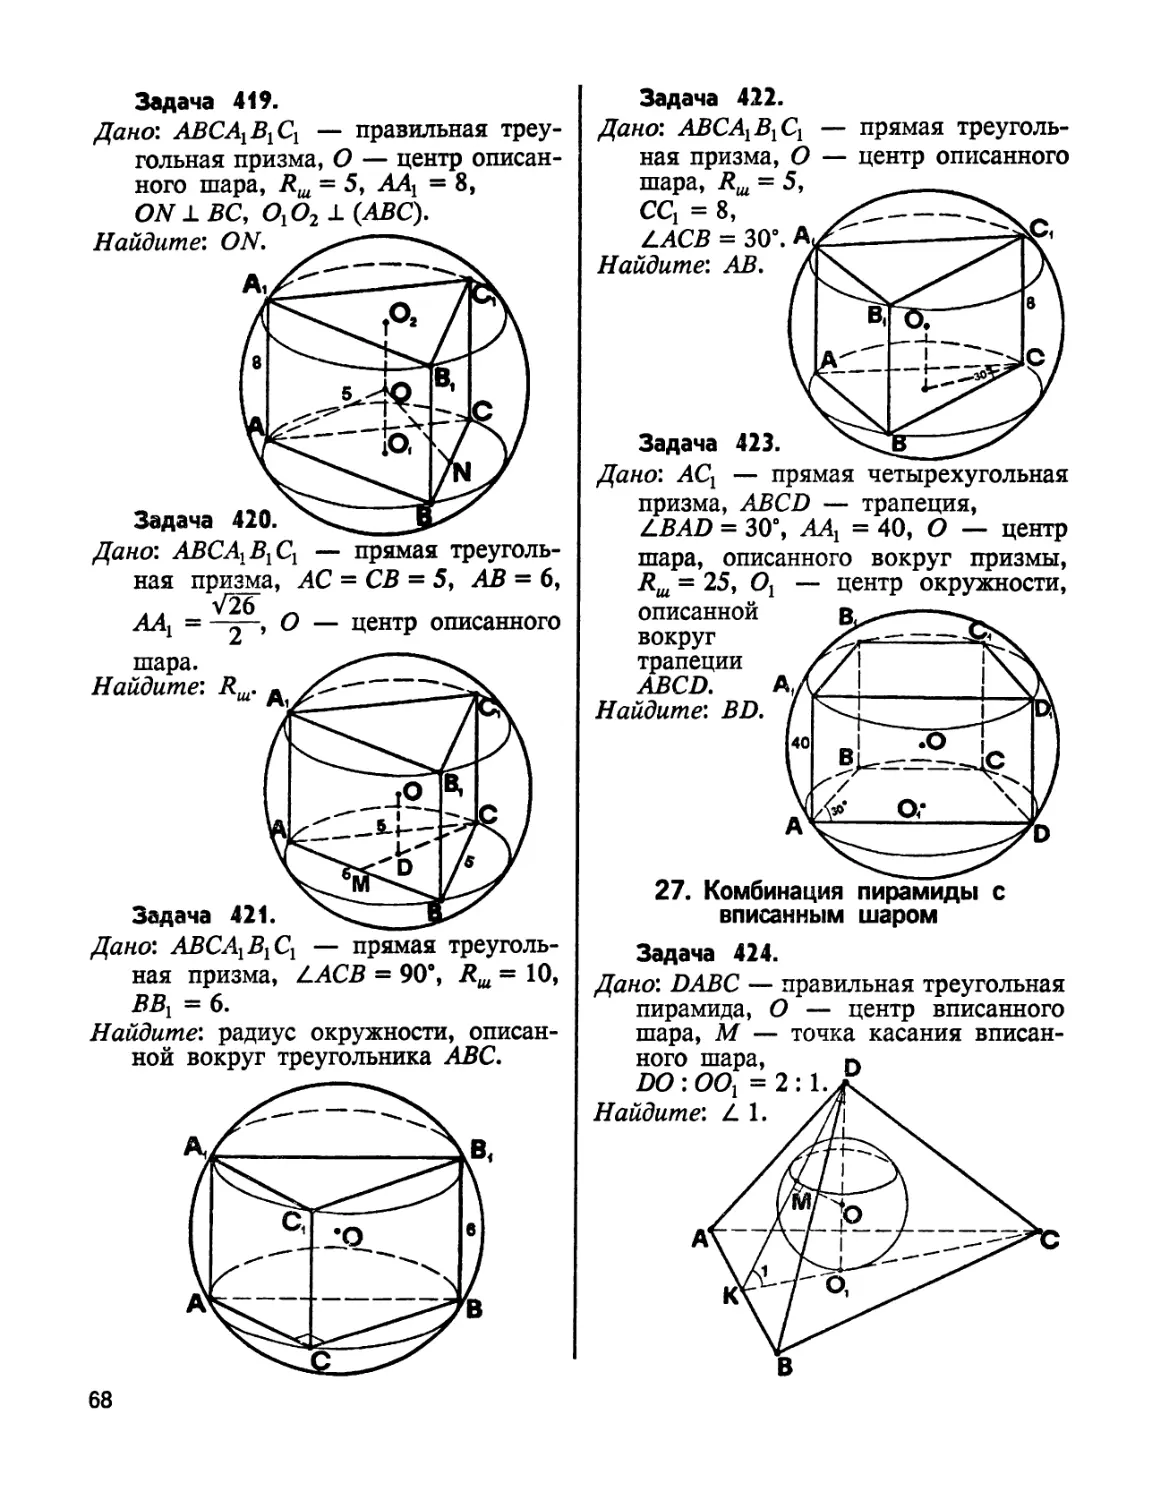 26. Комбинация пирамиды с вписанным шаром